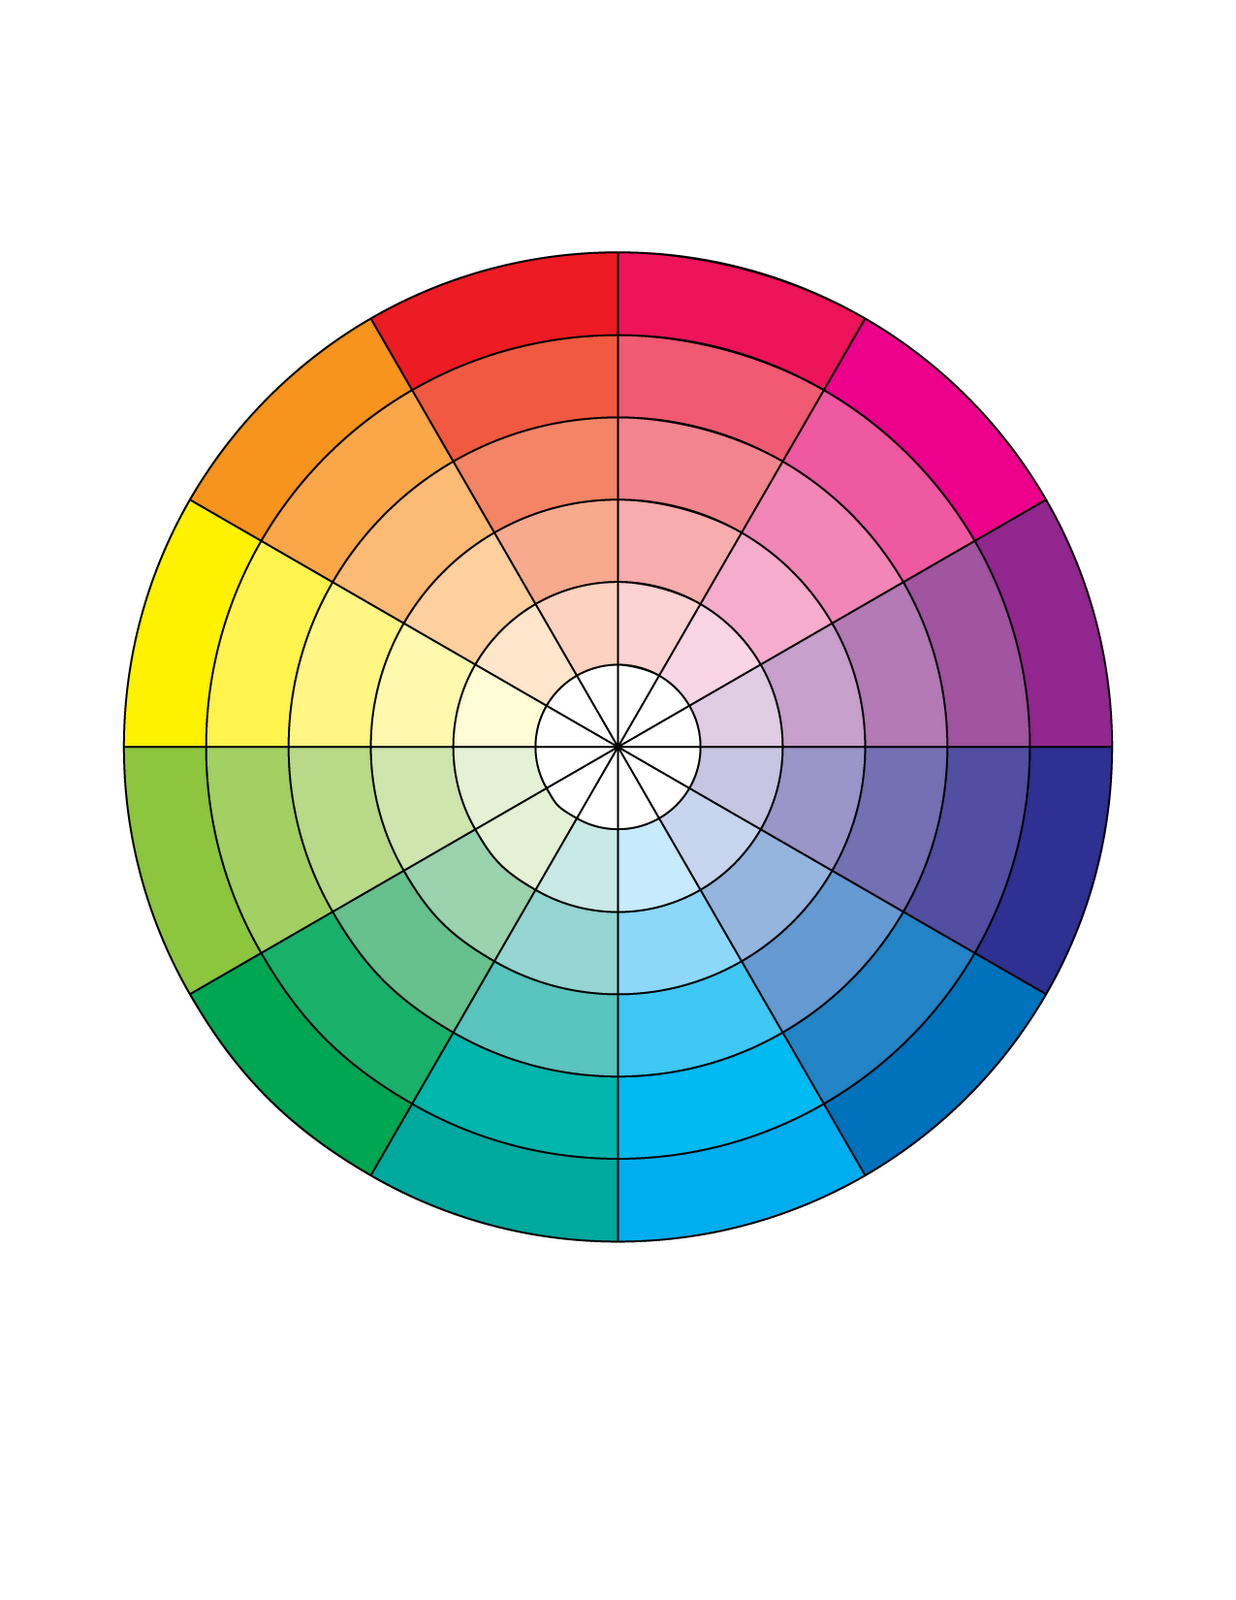 Круглая палитра. Цветовой круг Итана. Цветовой круг Манселла. Цветовой спектр круг Иттена. Цветовой круг Иттена 12 цветов.